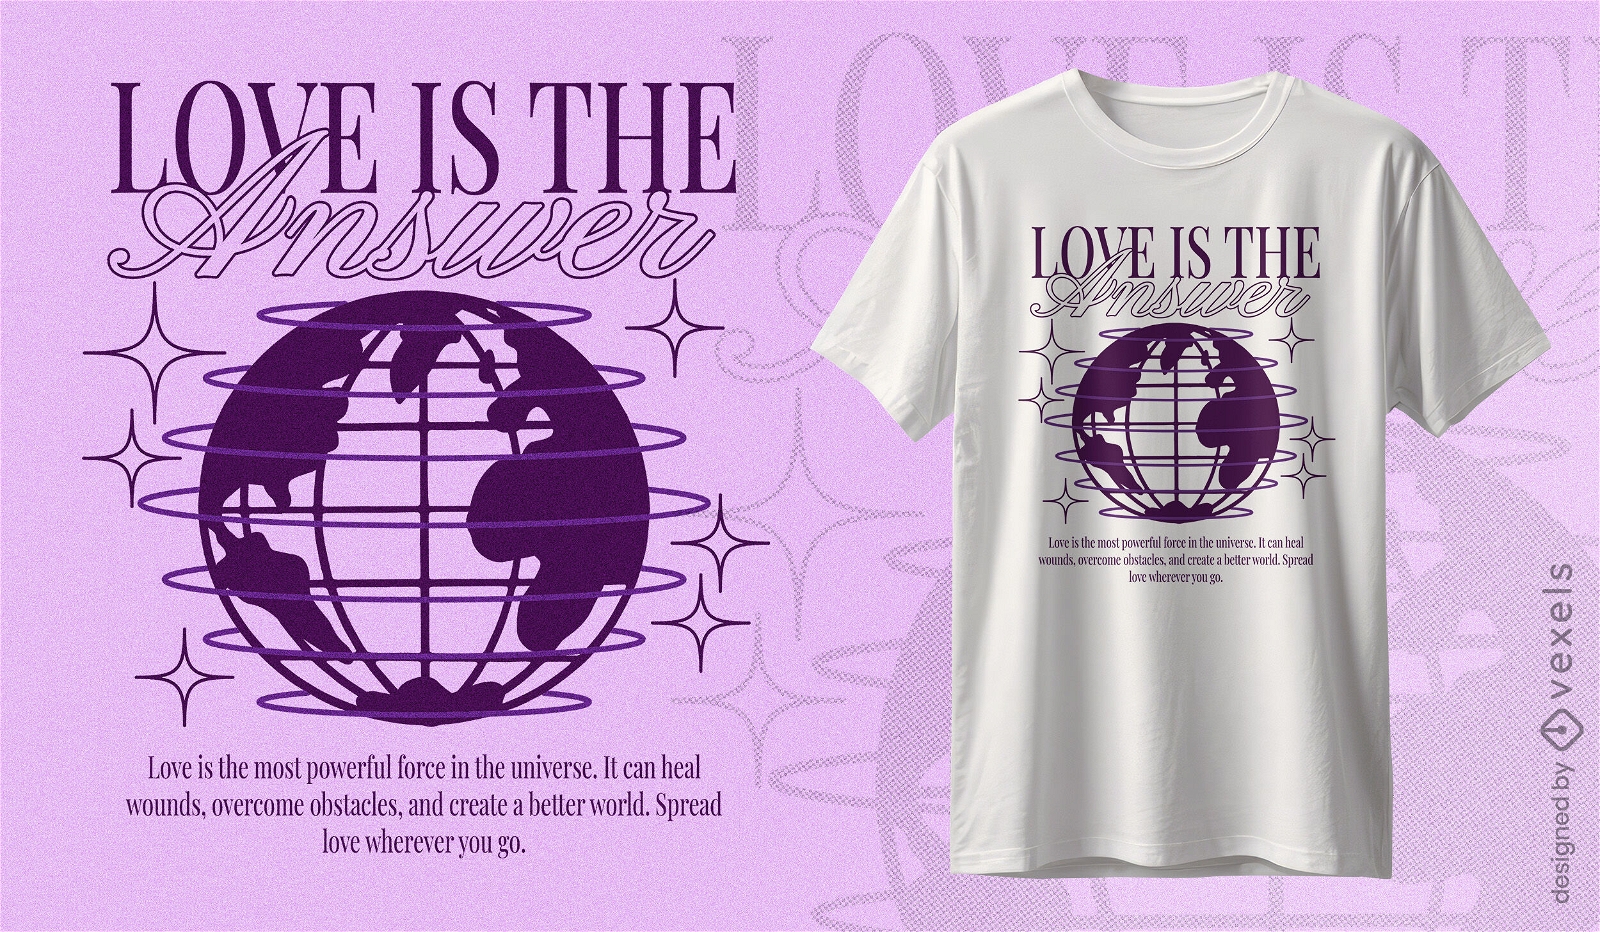 Dise?o de camiseta con cita de amor global.